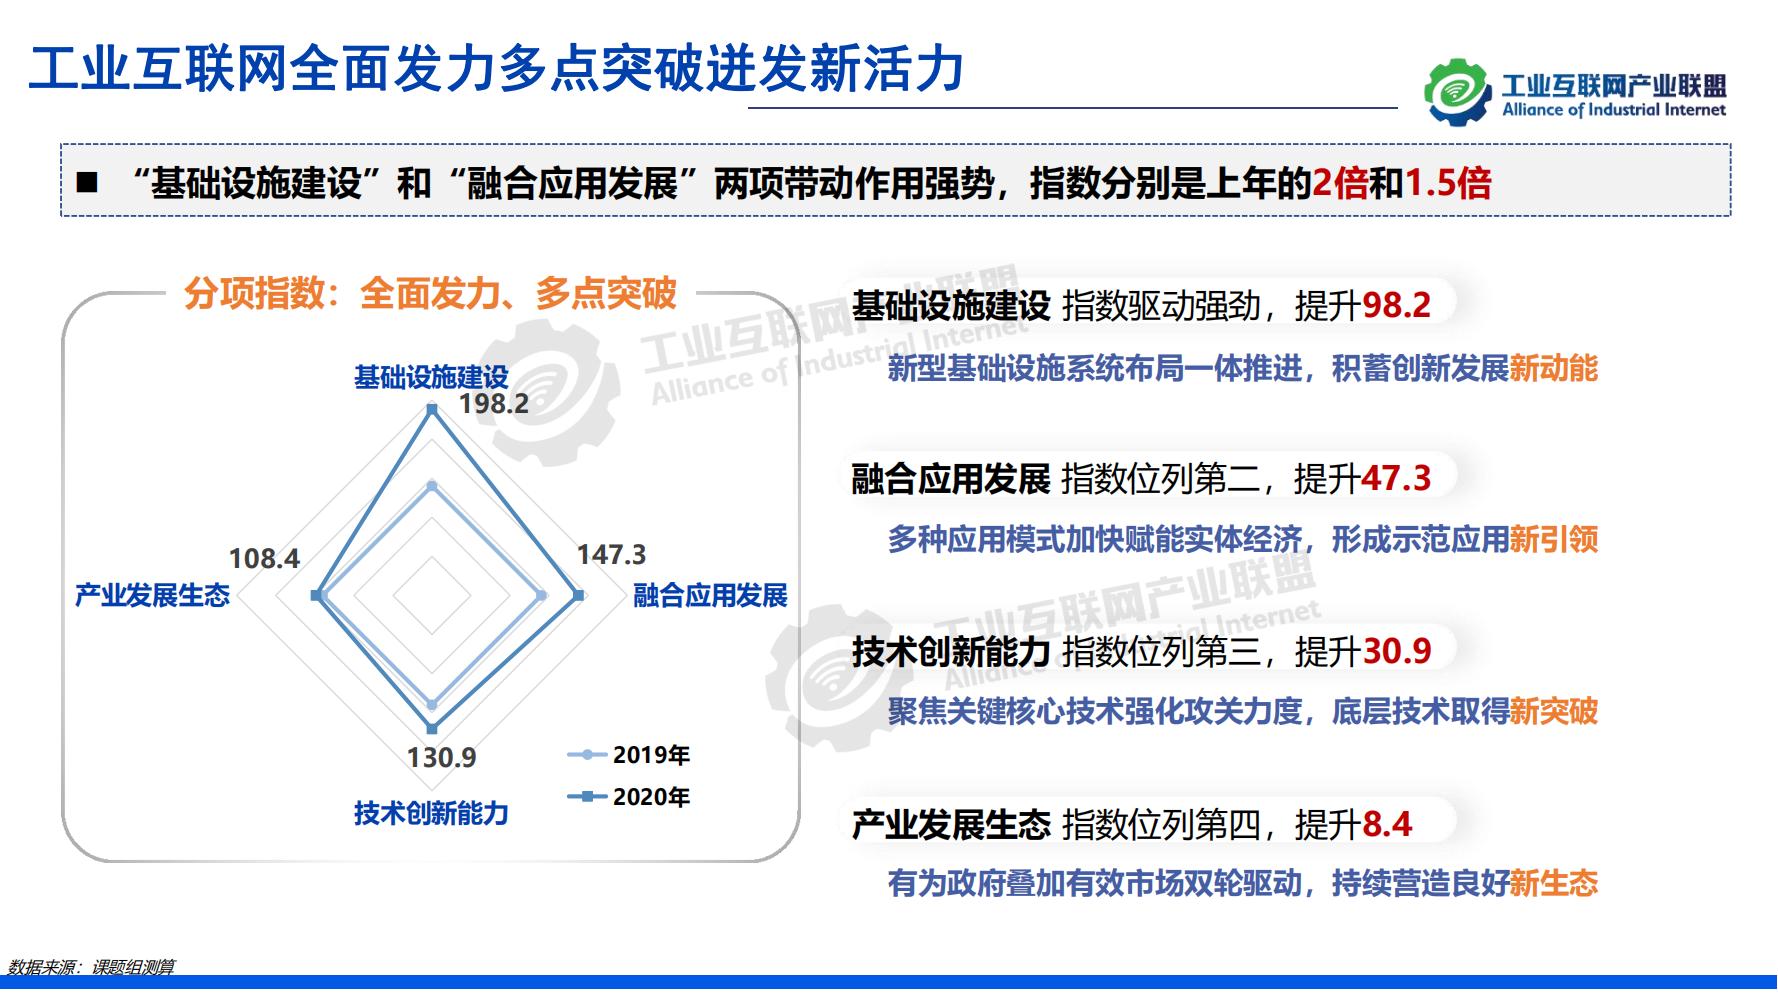 1-中国工业互联网发展成效评估报告-水印_12.jpg